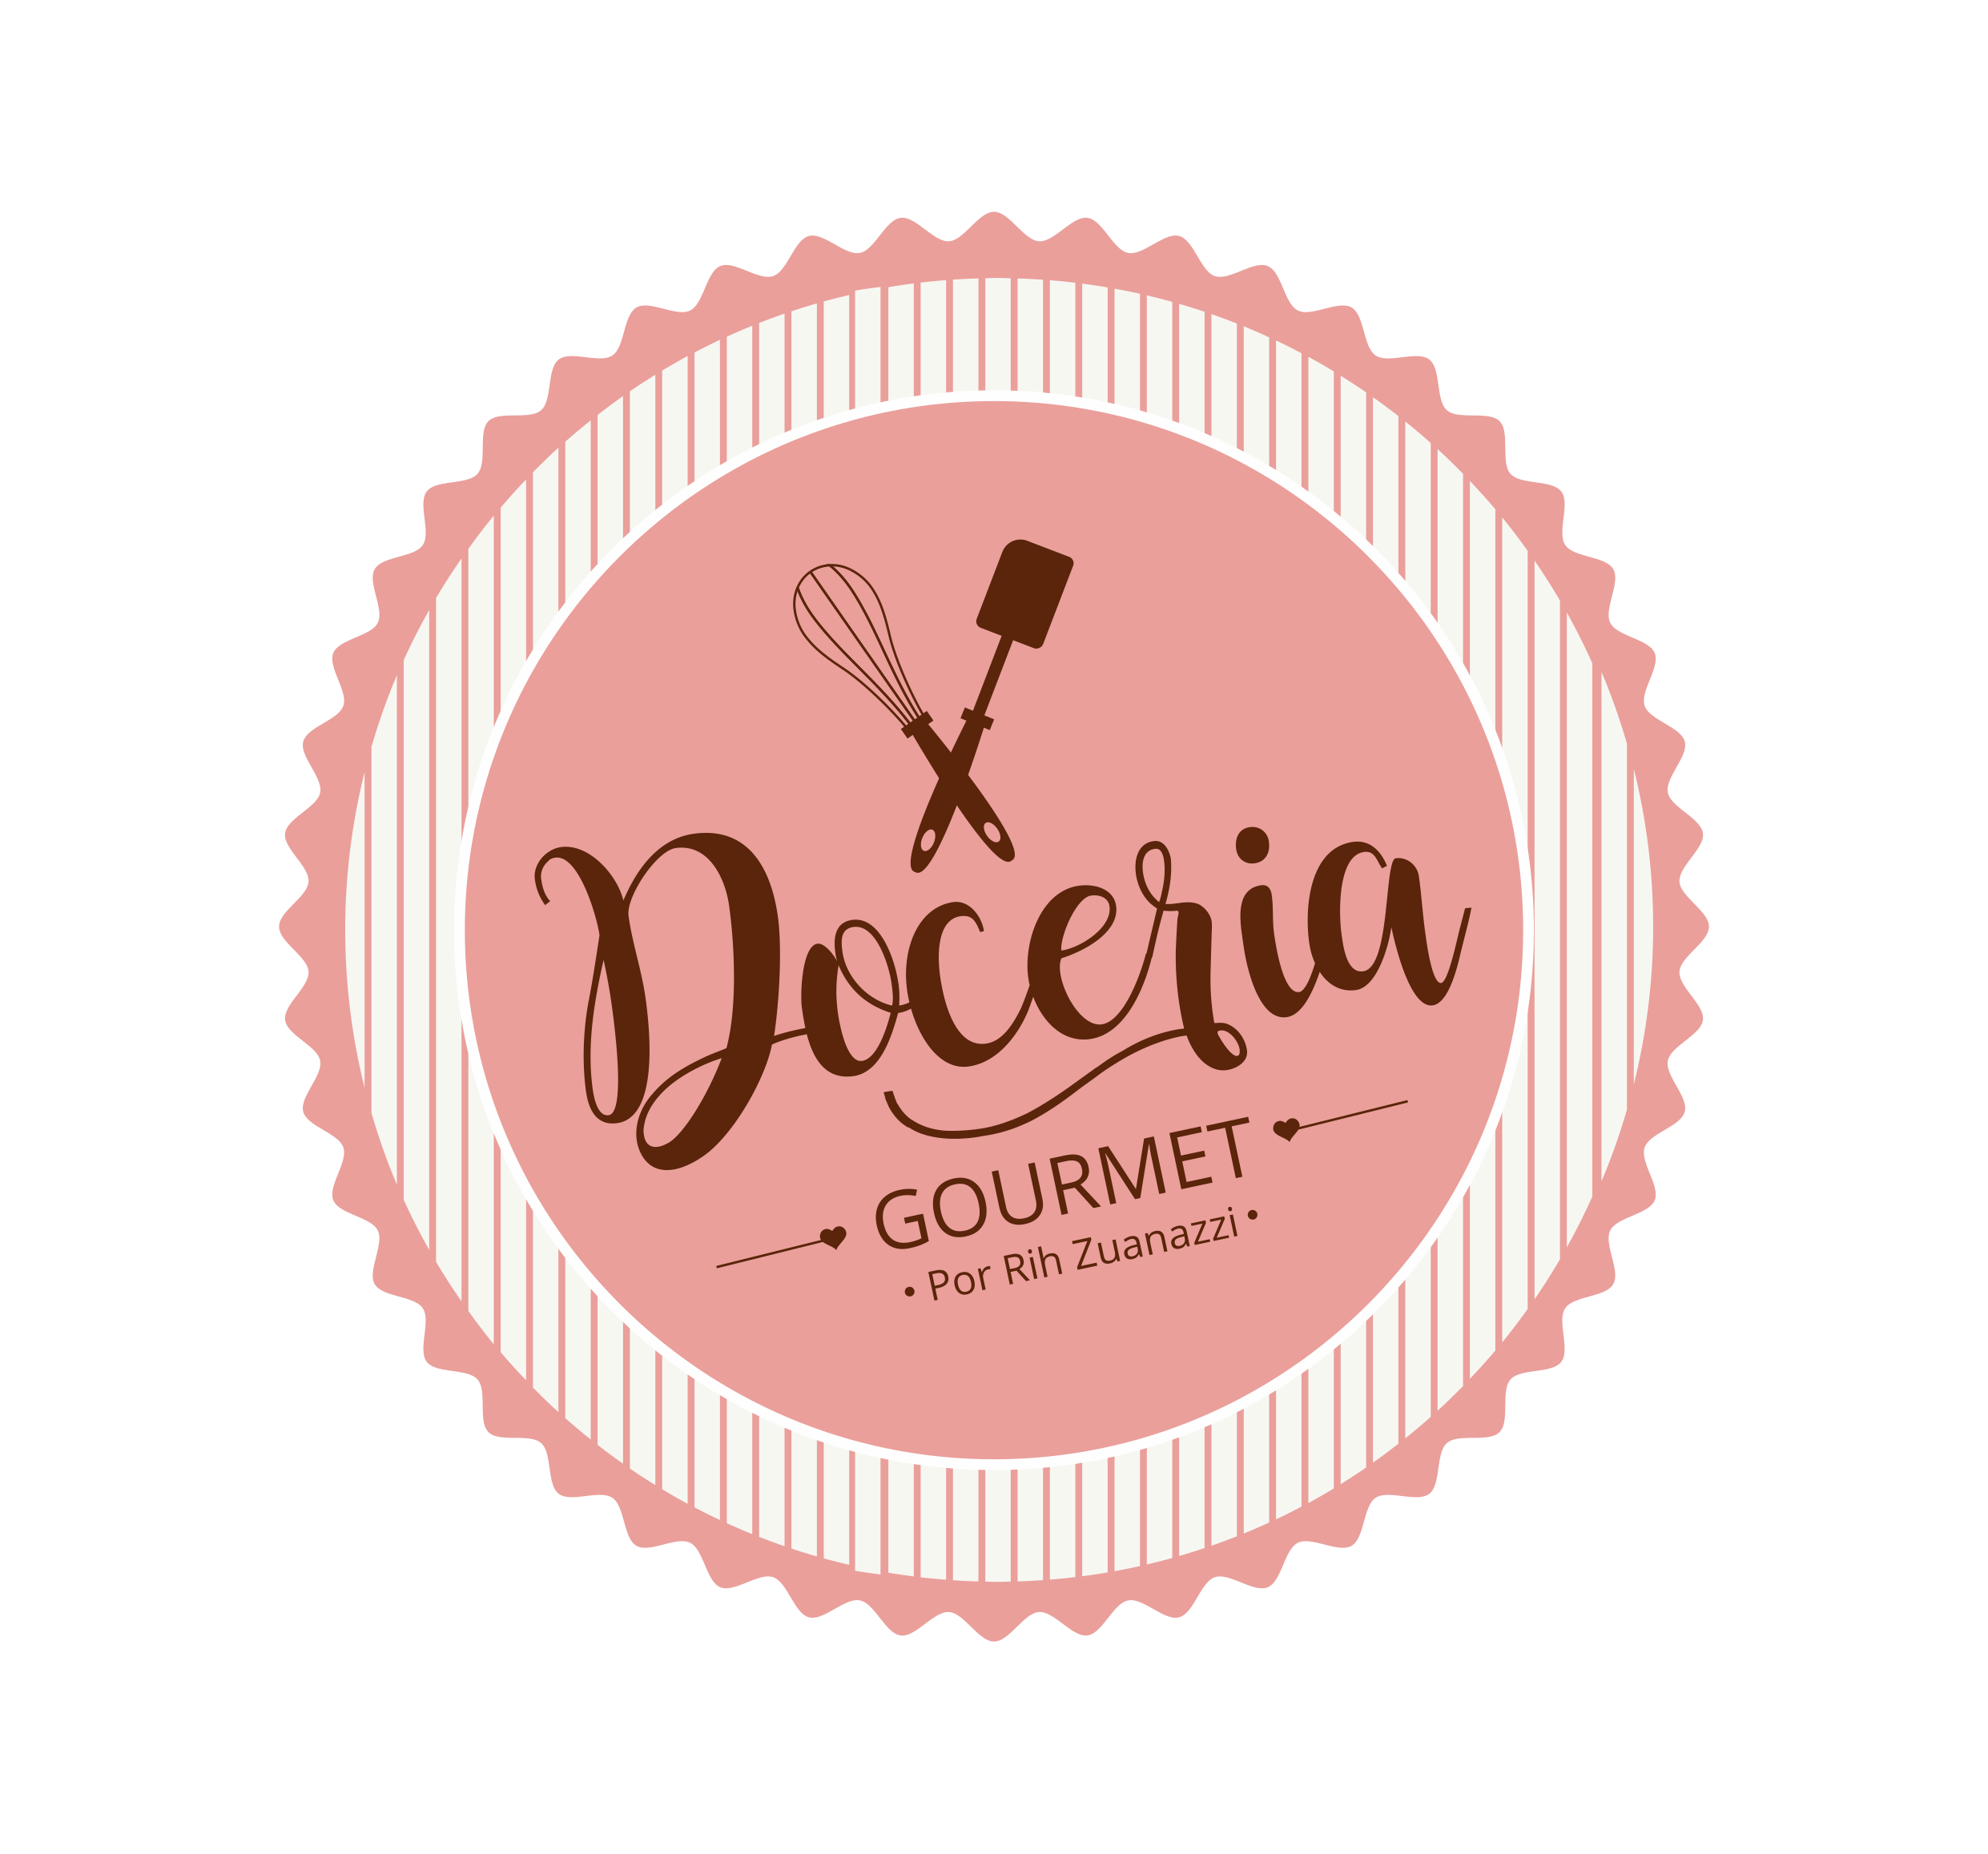 Doceria Gourmet 2074